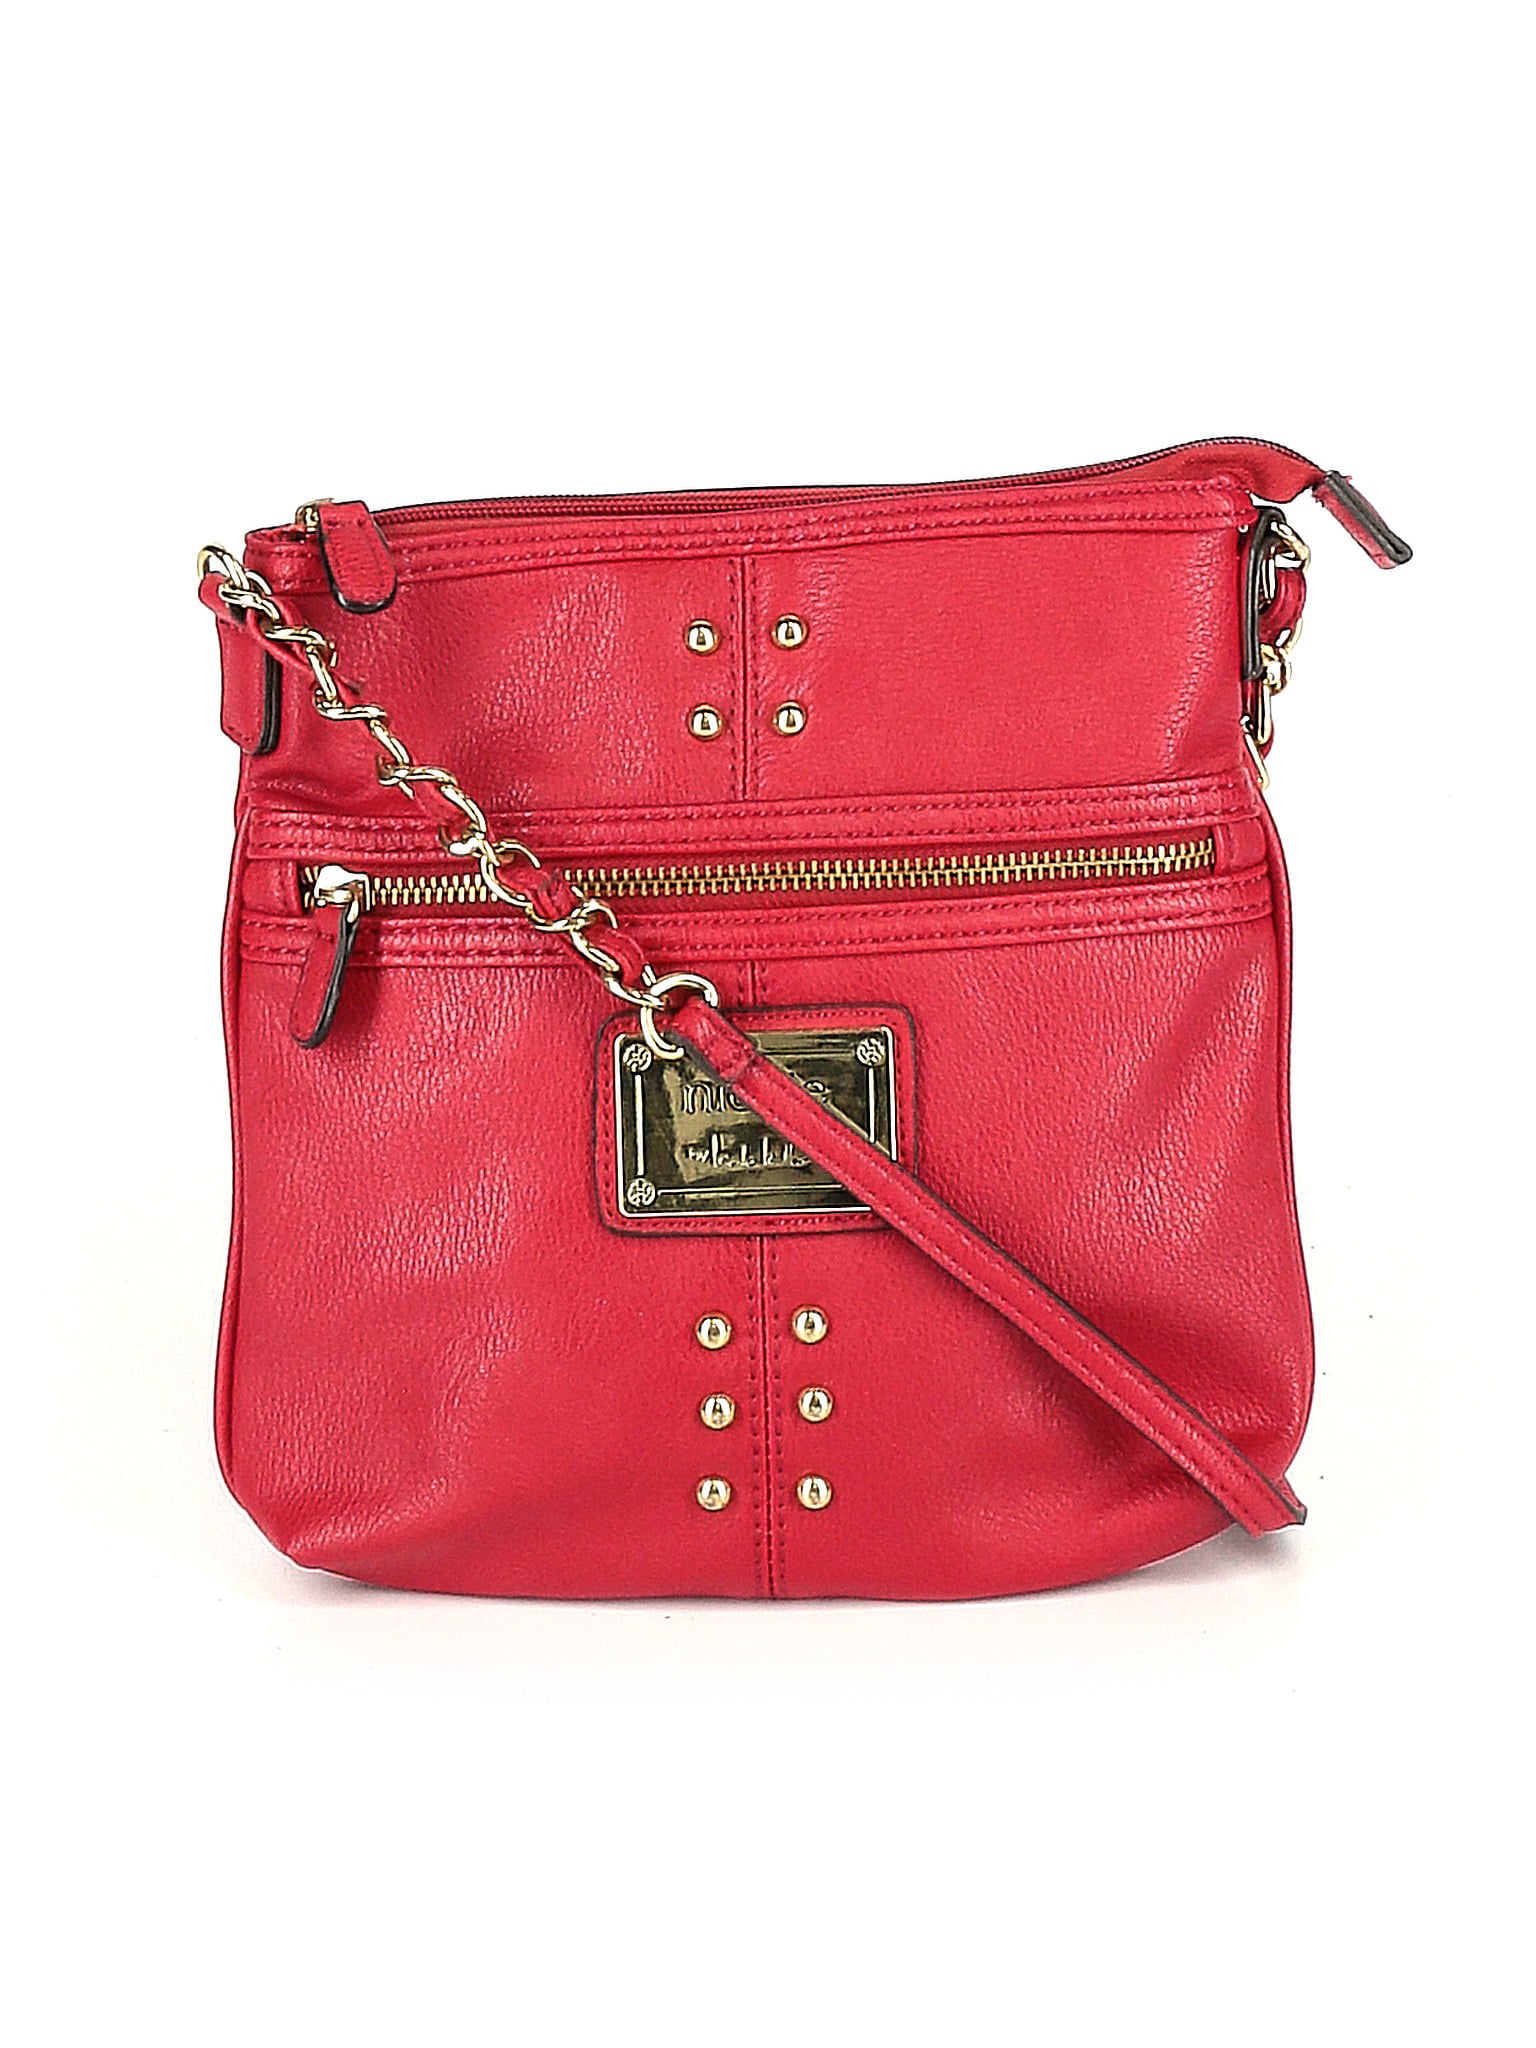 NICOLE MILLER Handbags for Women - Vestiaire Collective